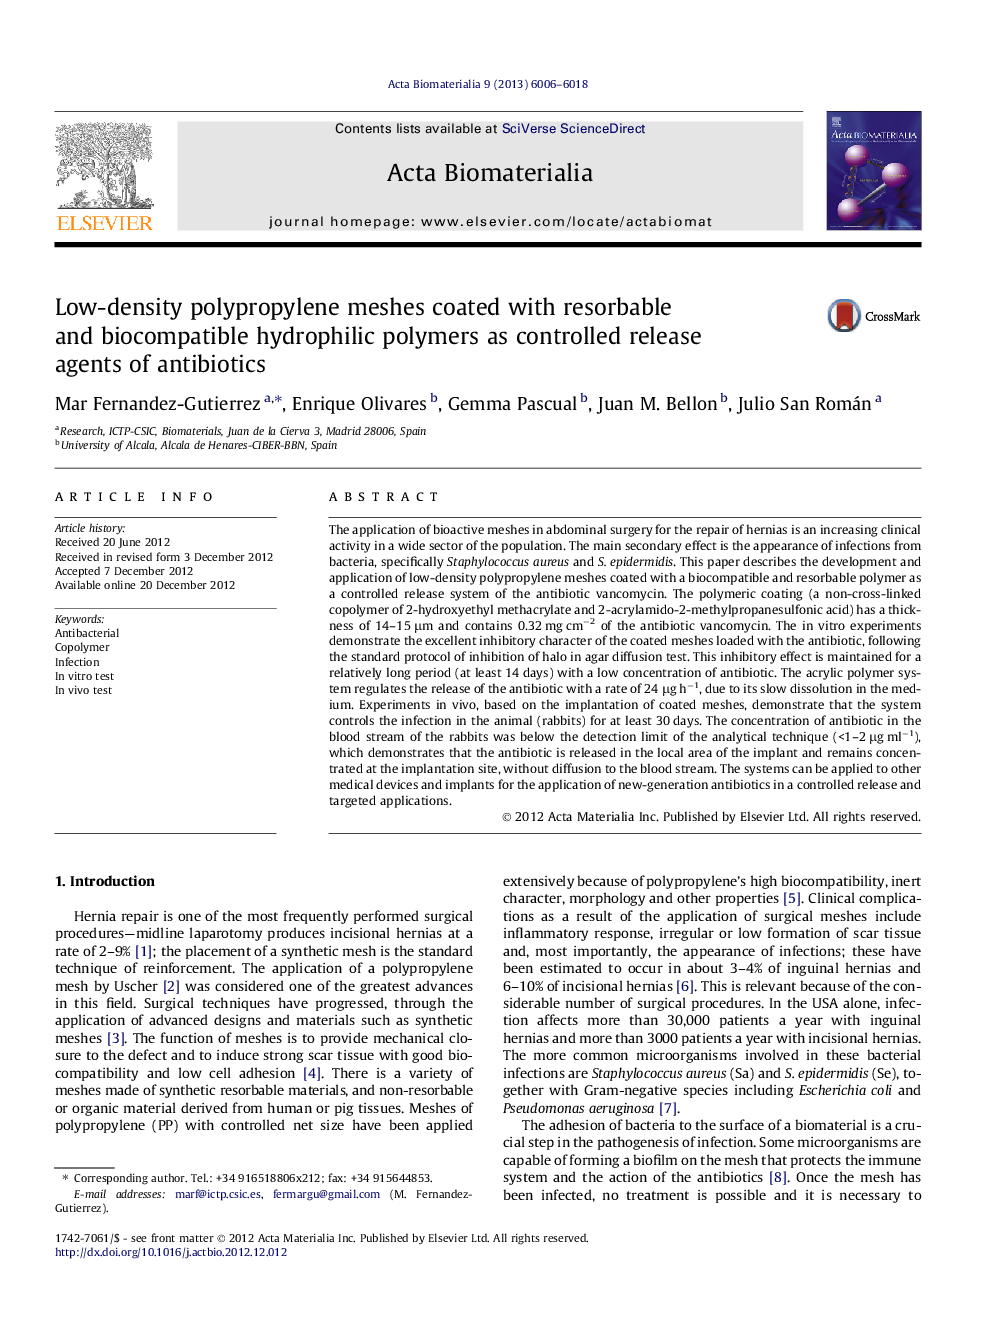 شبکه های پلی پروپیلن با ضخامت چگالی با پلیمرهای هیدروفیلی قابل انجماد و قابل انطباق پوشش داده شده به عنوان عوامل آزاد کننده کنترل شده آنتی بیوتیک ها 